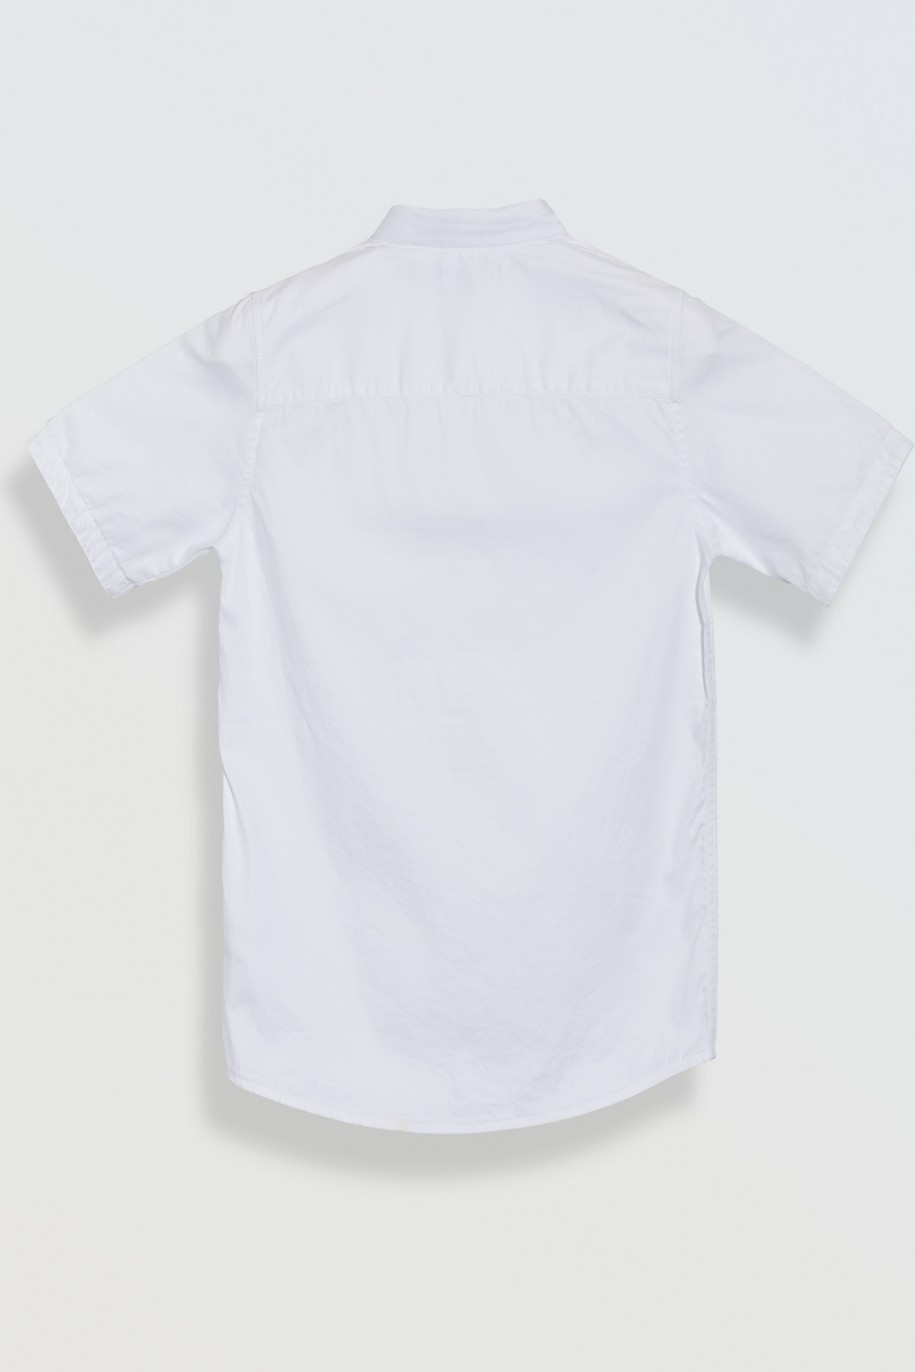 Biała koszula z kieszonką o regularnym kroju z krótkim rękawem - 46663